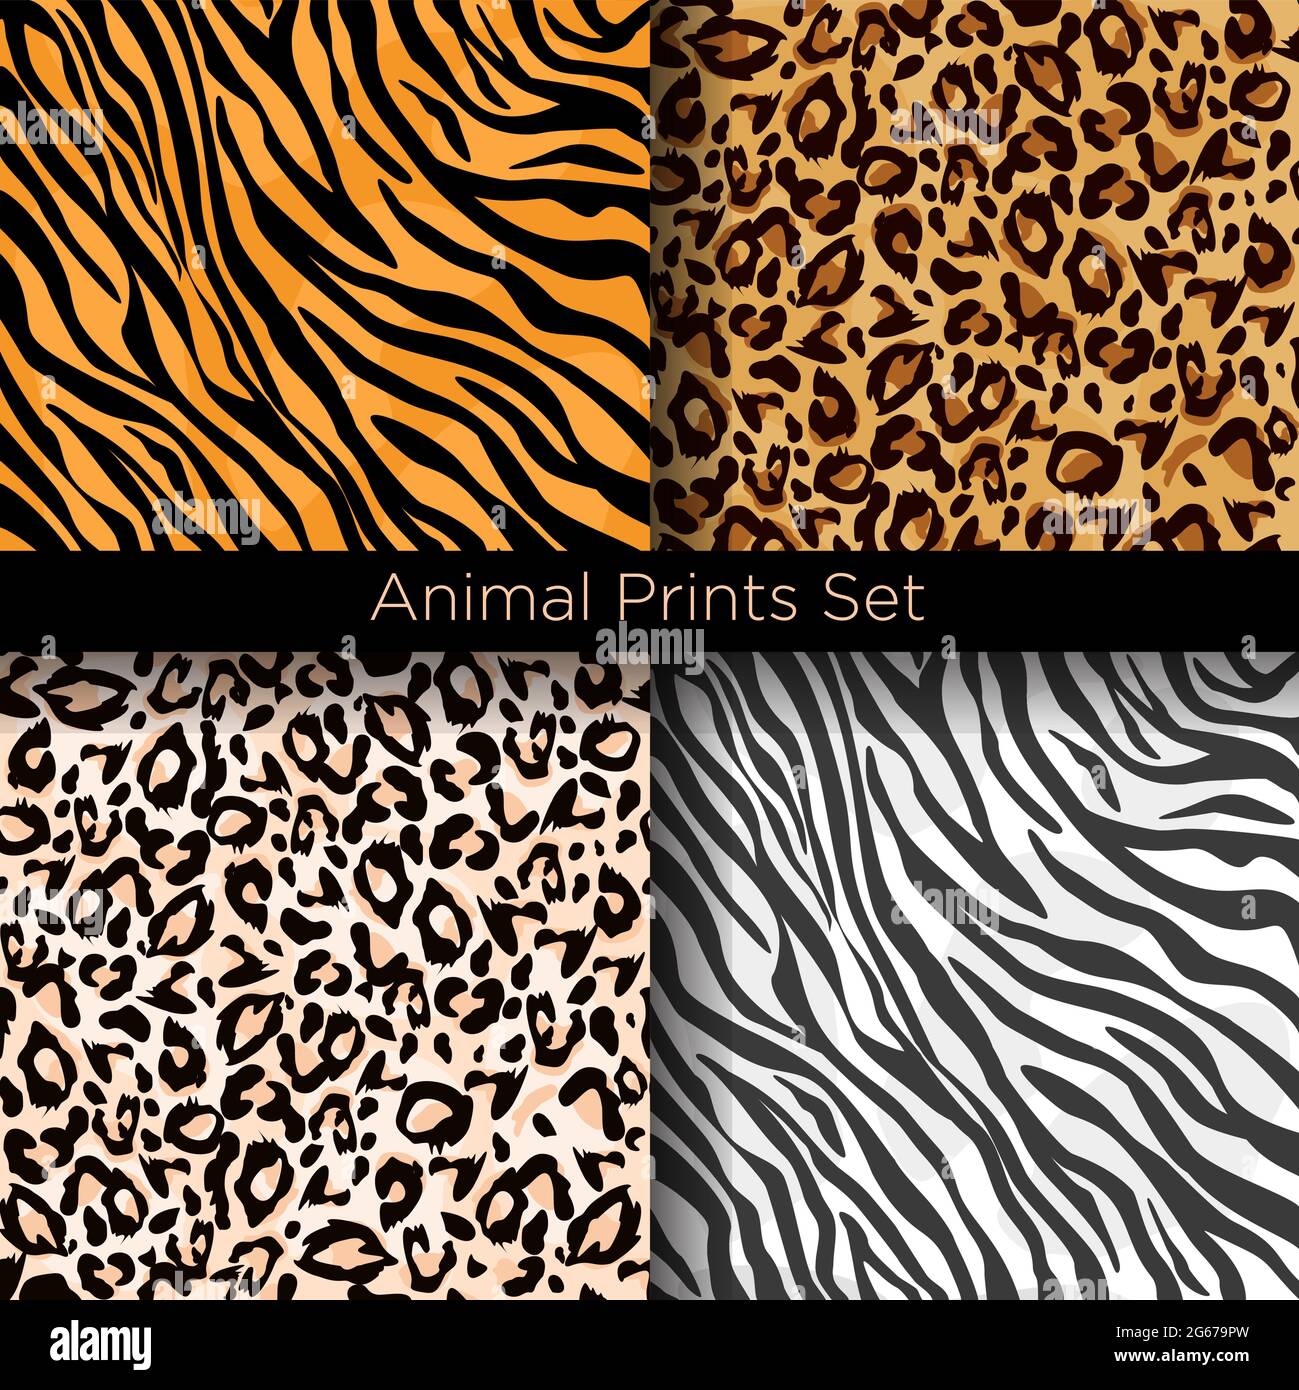 Vektorgrafik Satz von vier verschiedenen nahtlosen Tiermustern. Safari Textilkonzept. Tiger, Zebra, Leopard und jaguar Haut nahtlose Muster in Stock Vektor